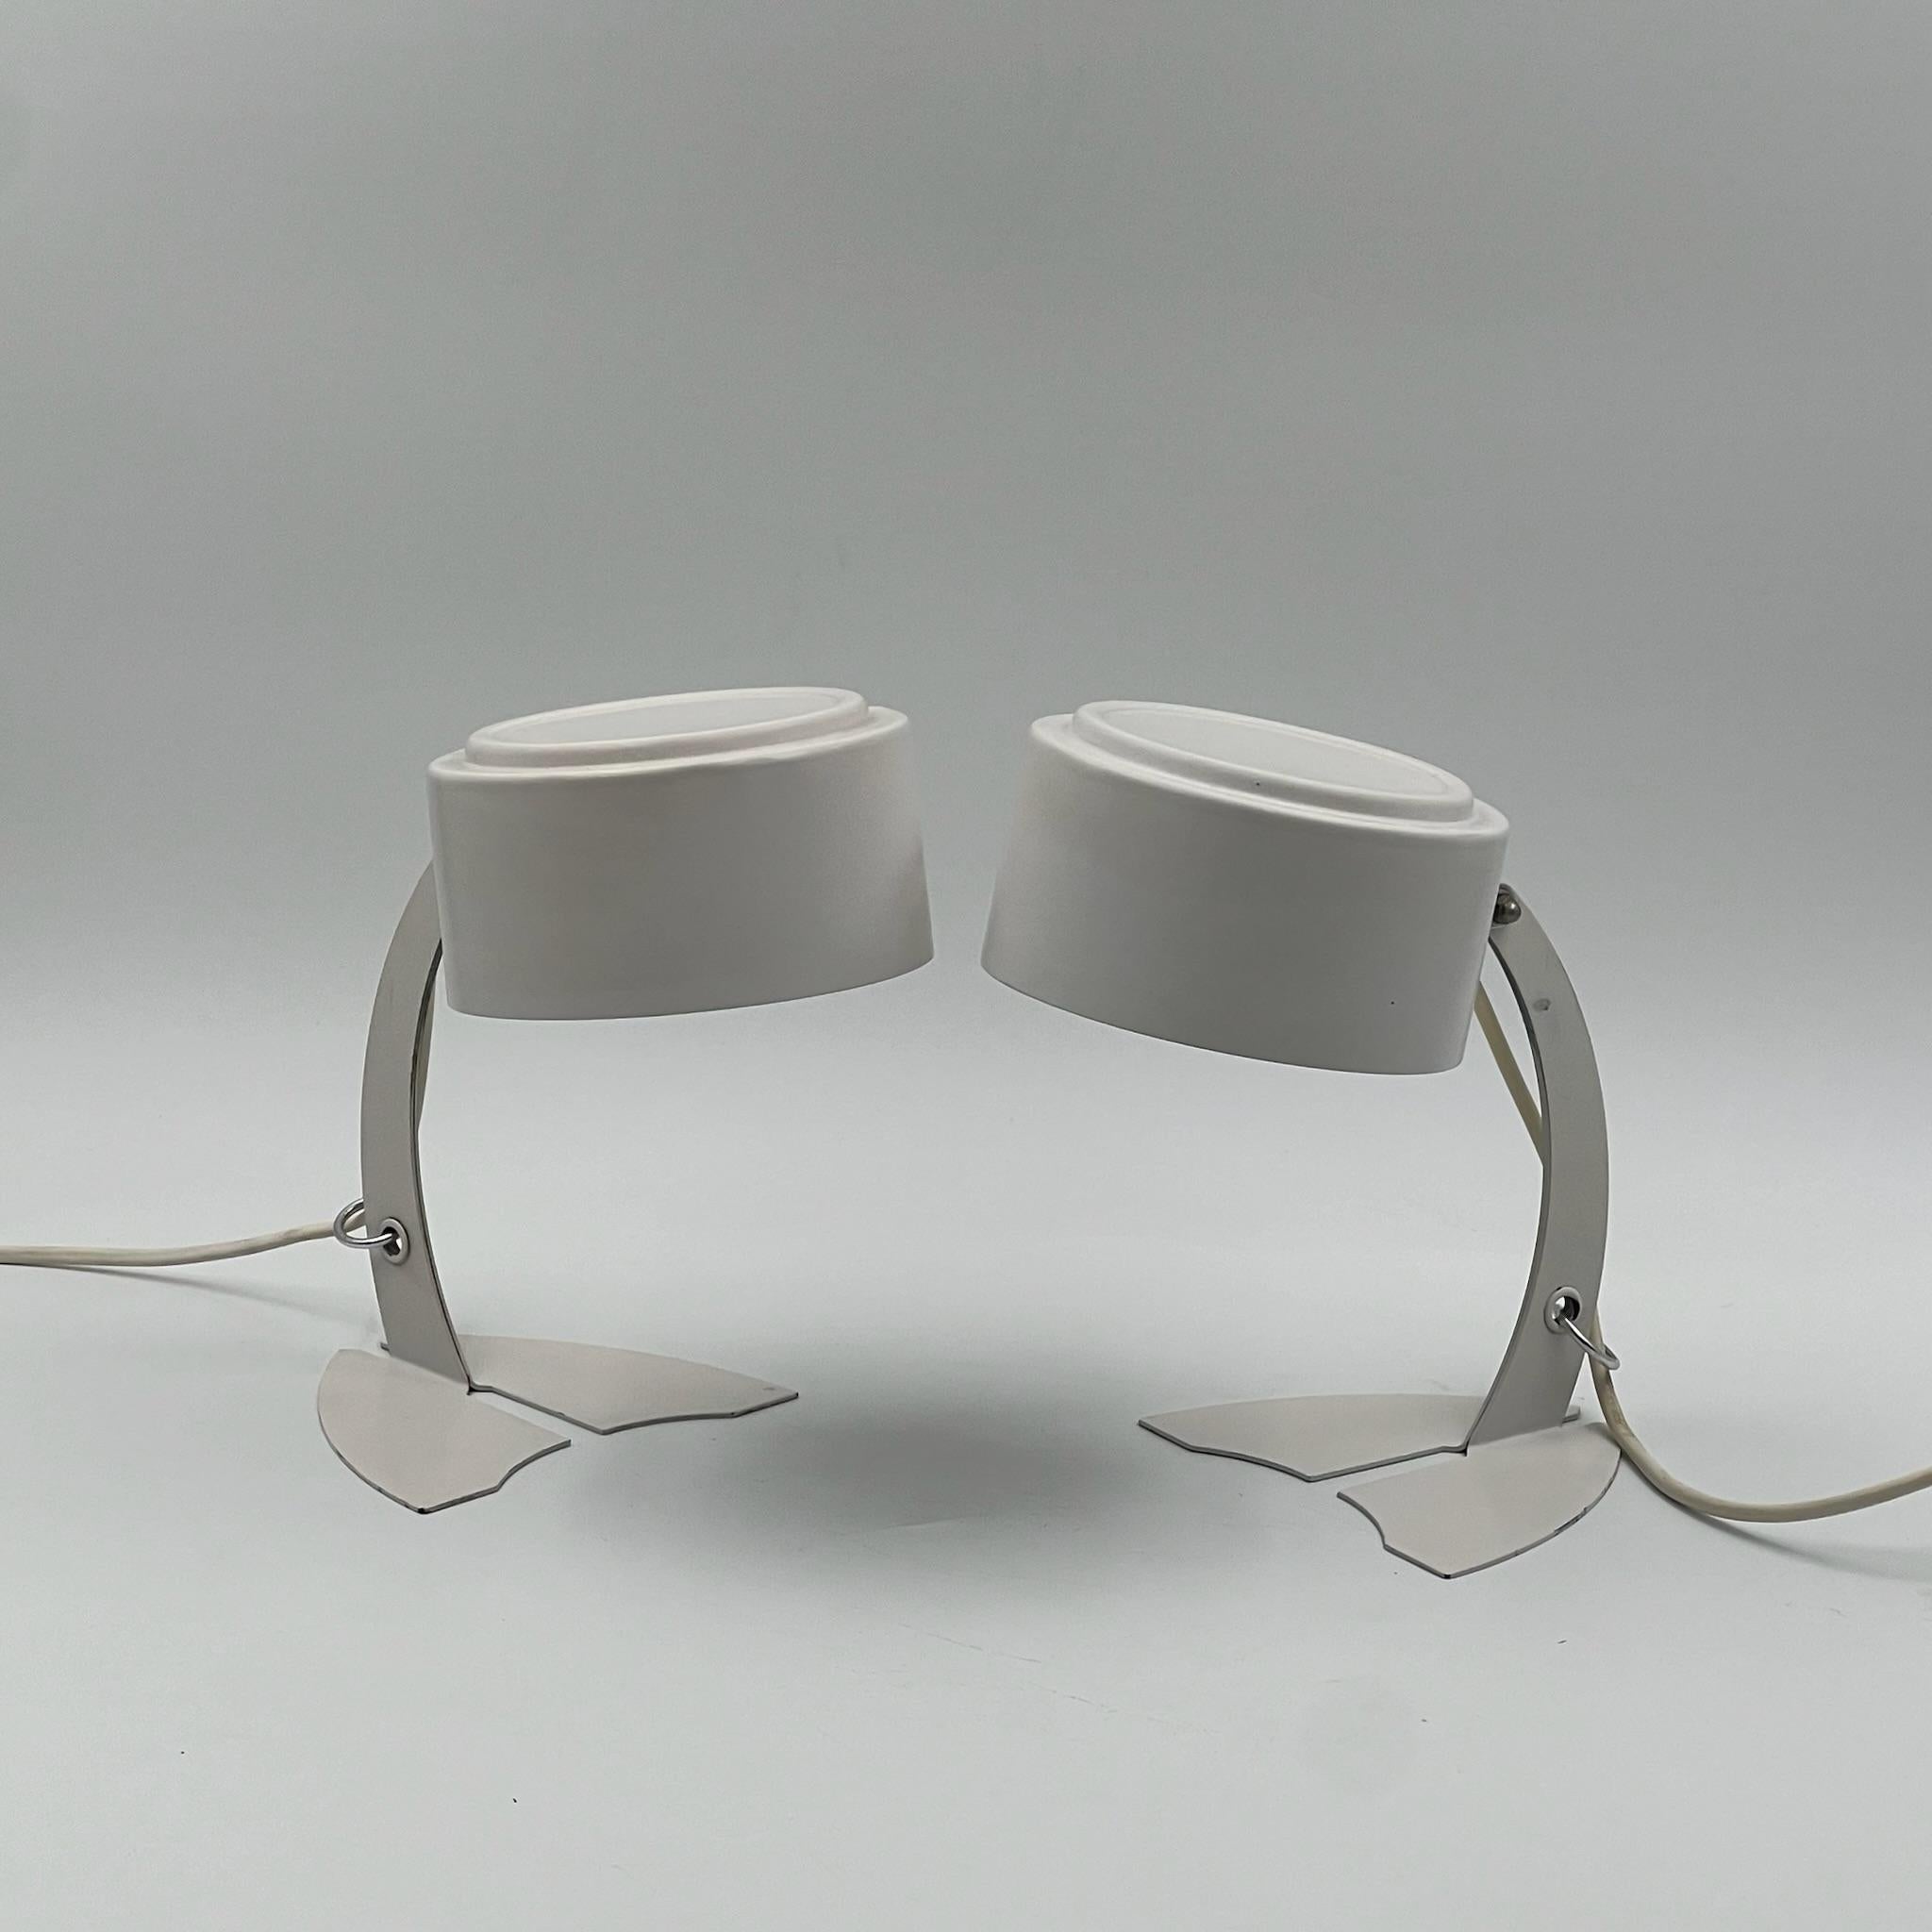 Beleuchten Sie Ihr Zuhause oder Ihren Arbeitsbereich mit Retro-Charme mit diesem Paar Vintage-Schreibtischlampen, die von Targetti Sankey in den 60/70er Jahren hergestellt wurden. Mit ihrem einzigartigen Design und ihrer tadellosen Handwerkskunst